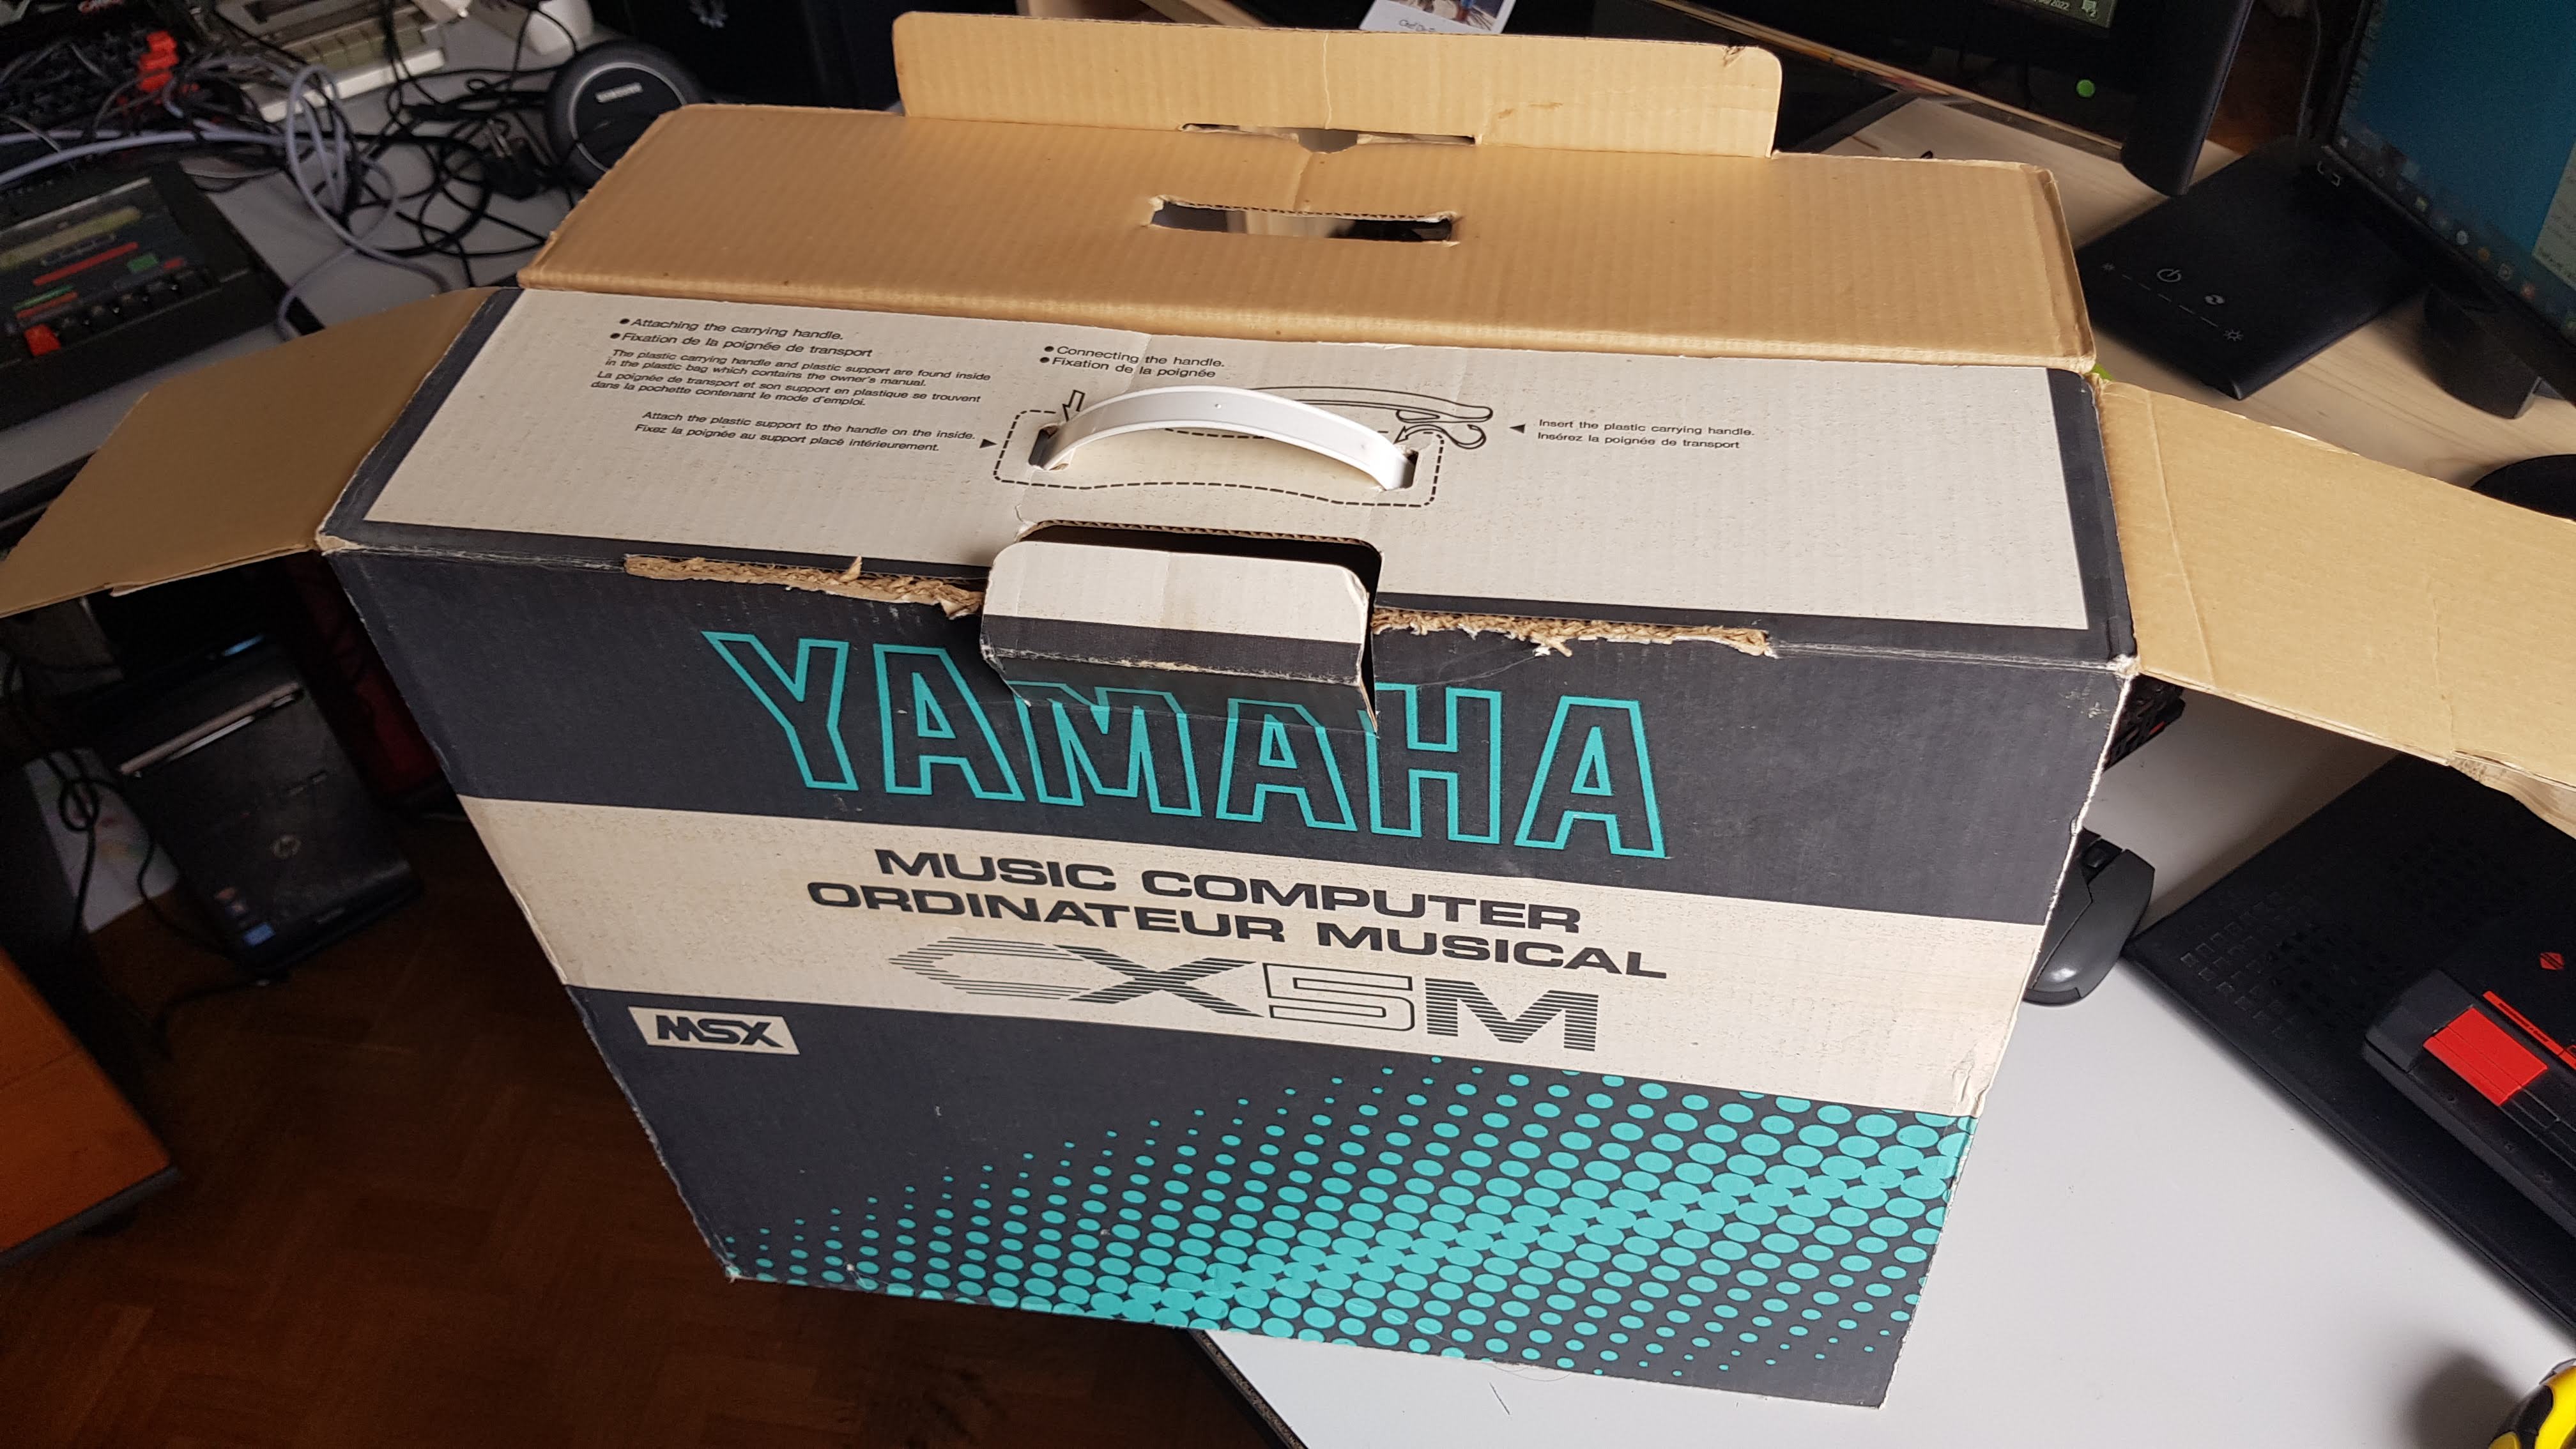  [VDS/ECH] MSX Yamaha CX5M 22060403400317469117913364